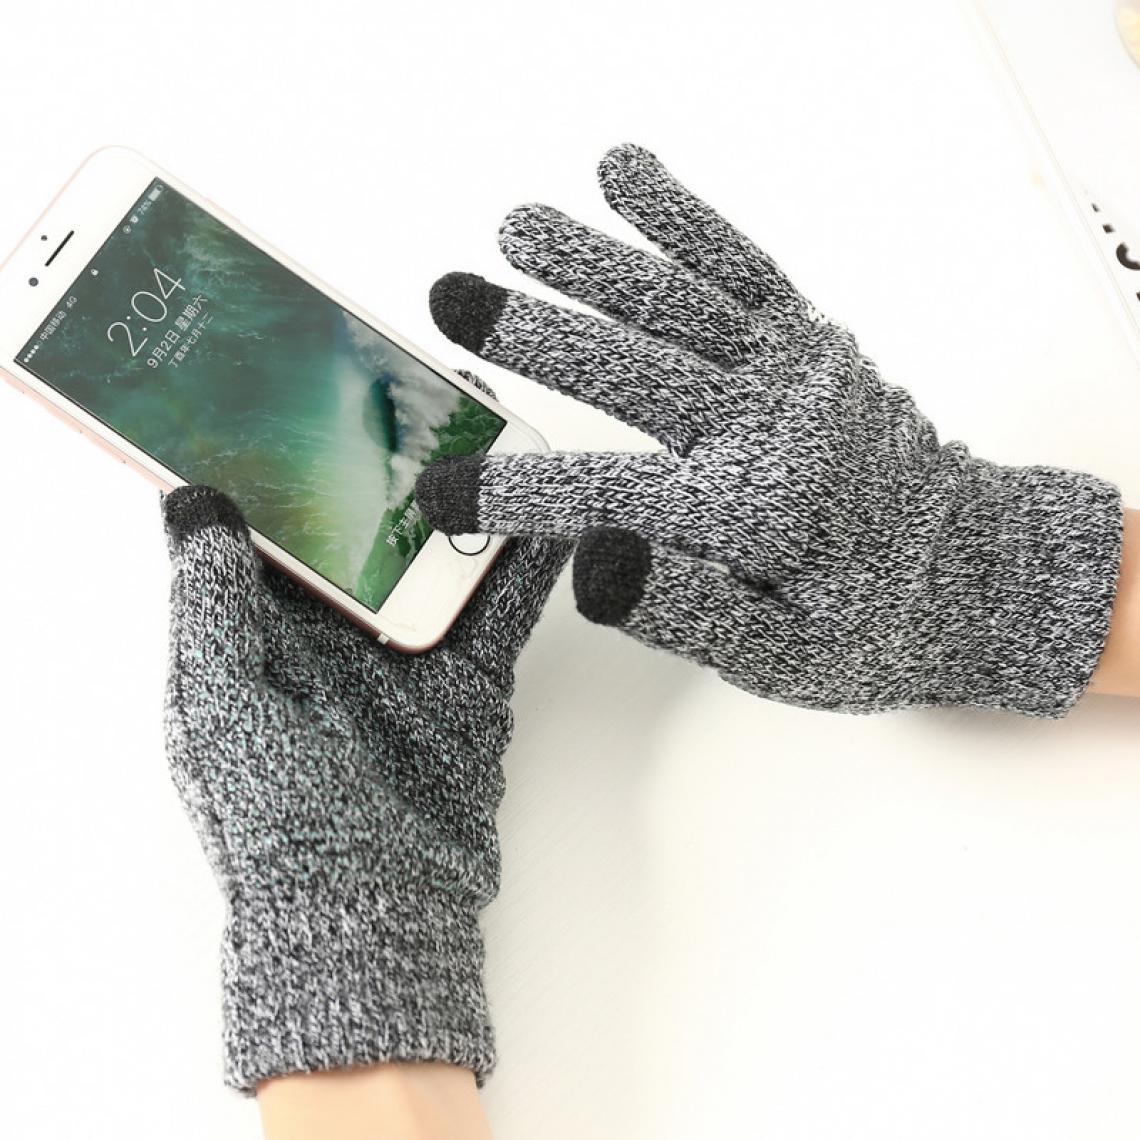 Shot - Gants Homme tactiles pour SAMSUNG Galaxy S10 Lite Smartphone Taille M 3 doigts Hiver (GRIS) - Autres accessoires smartphone